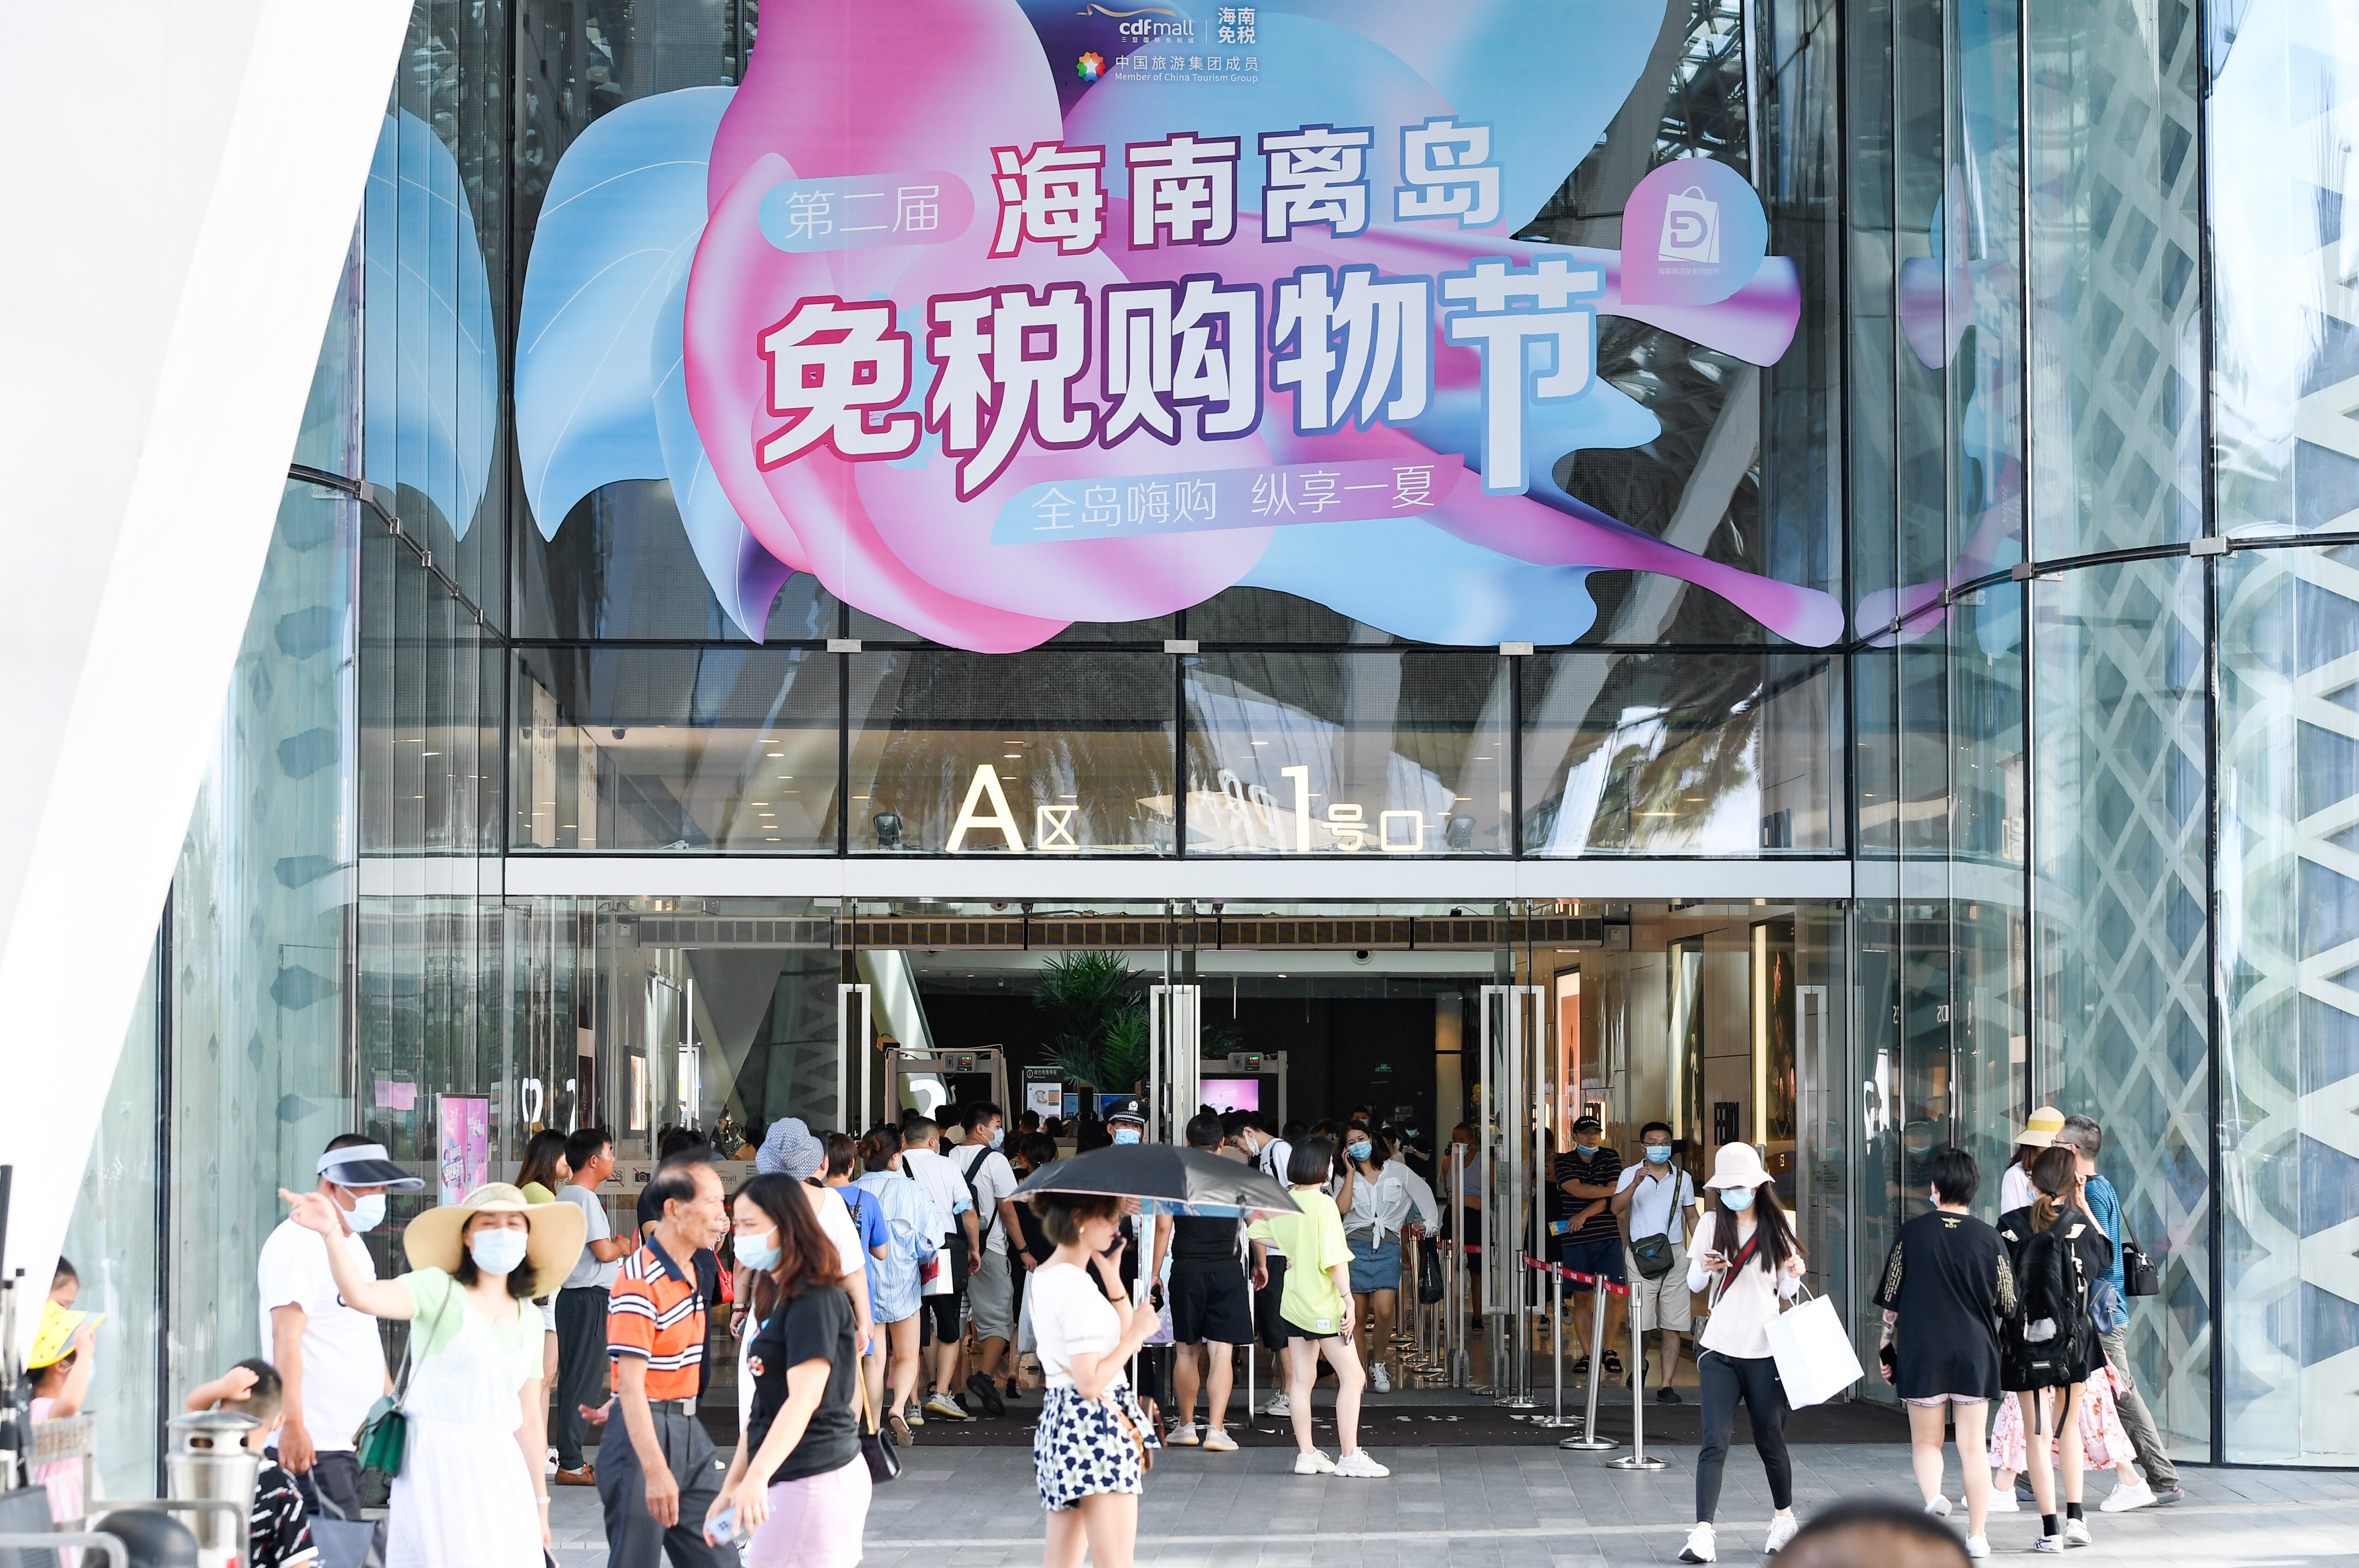 El lujo da marcha atrás en Hong Kong: Louis Vuitton y Fendi cierran tiendas  en la ciudad